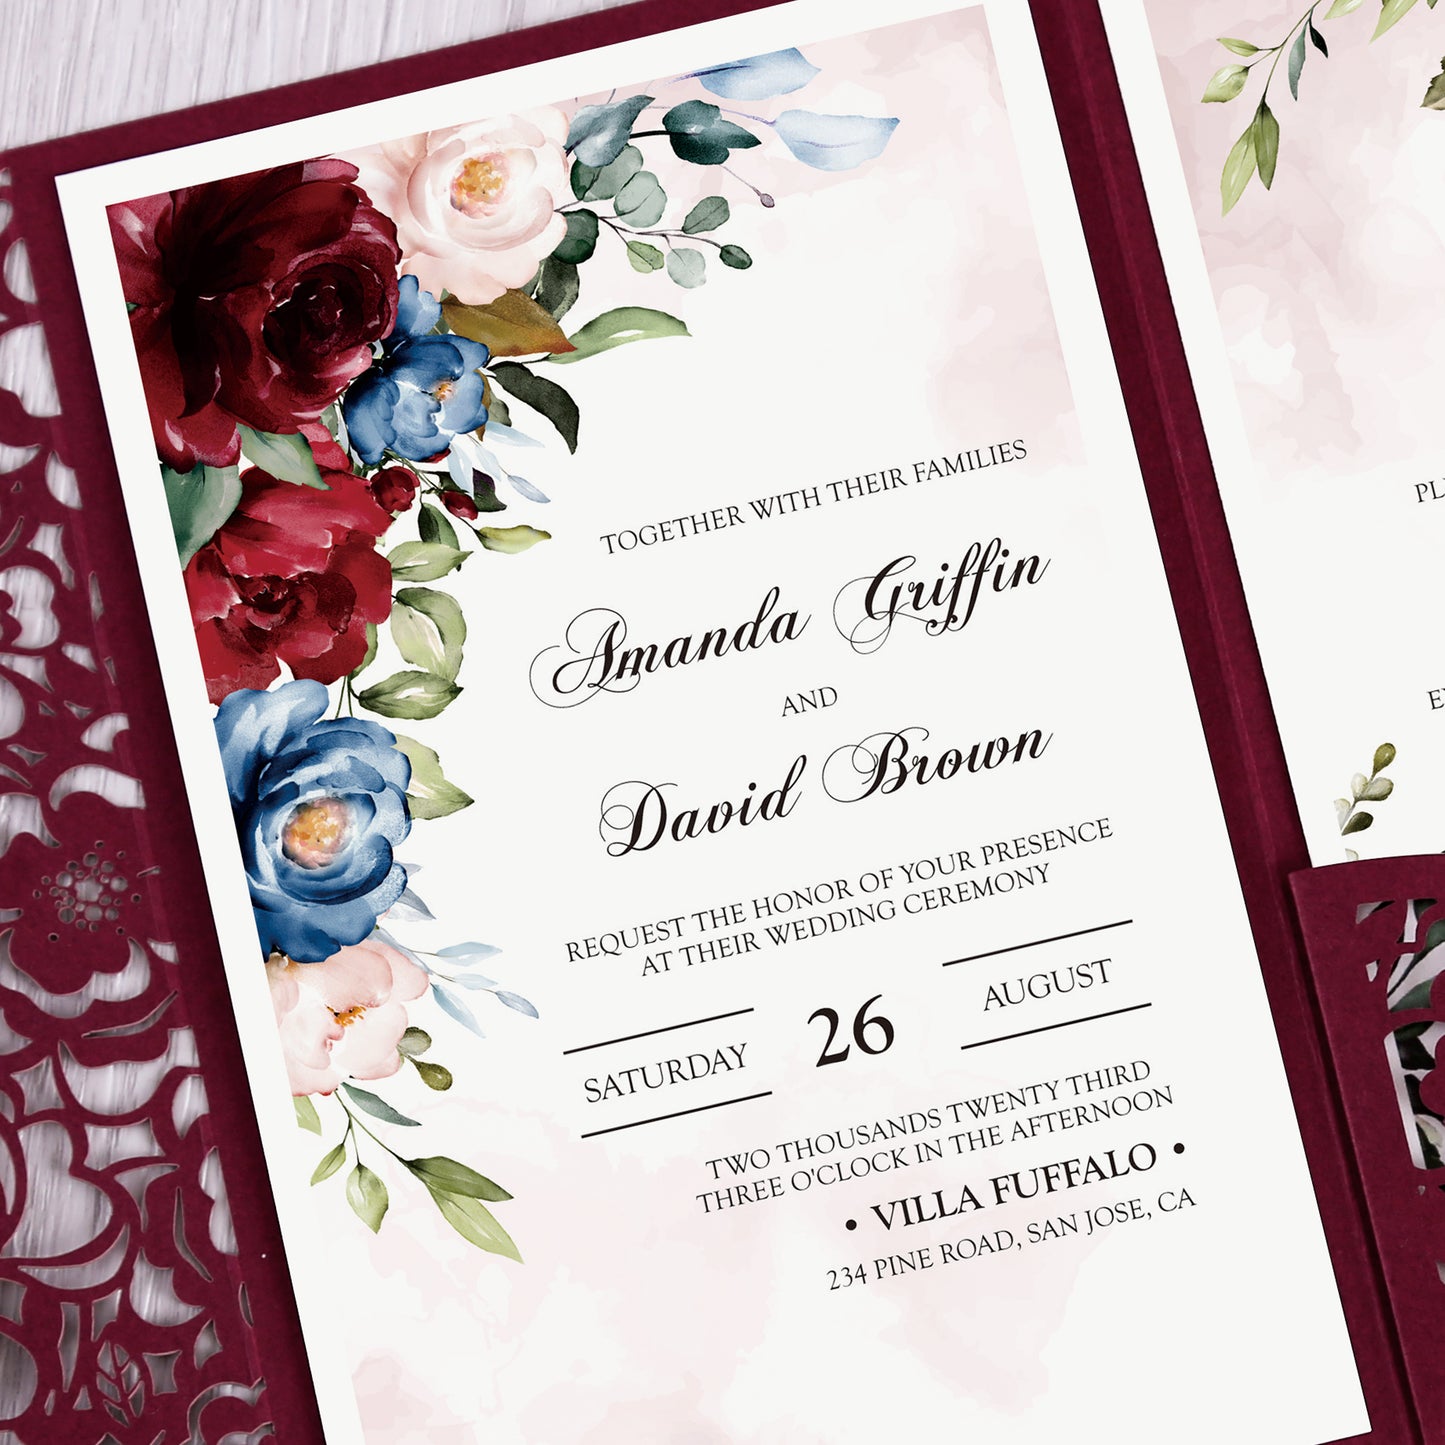 Burgundy Floral Laser cut invitation cards for Wedding